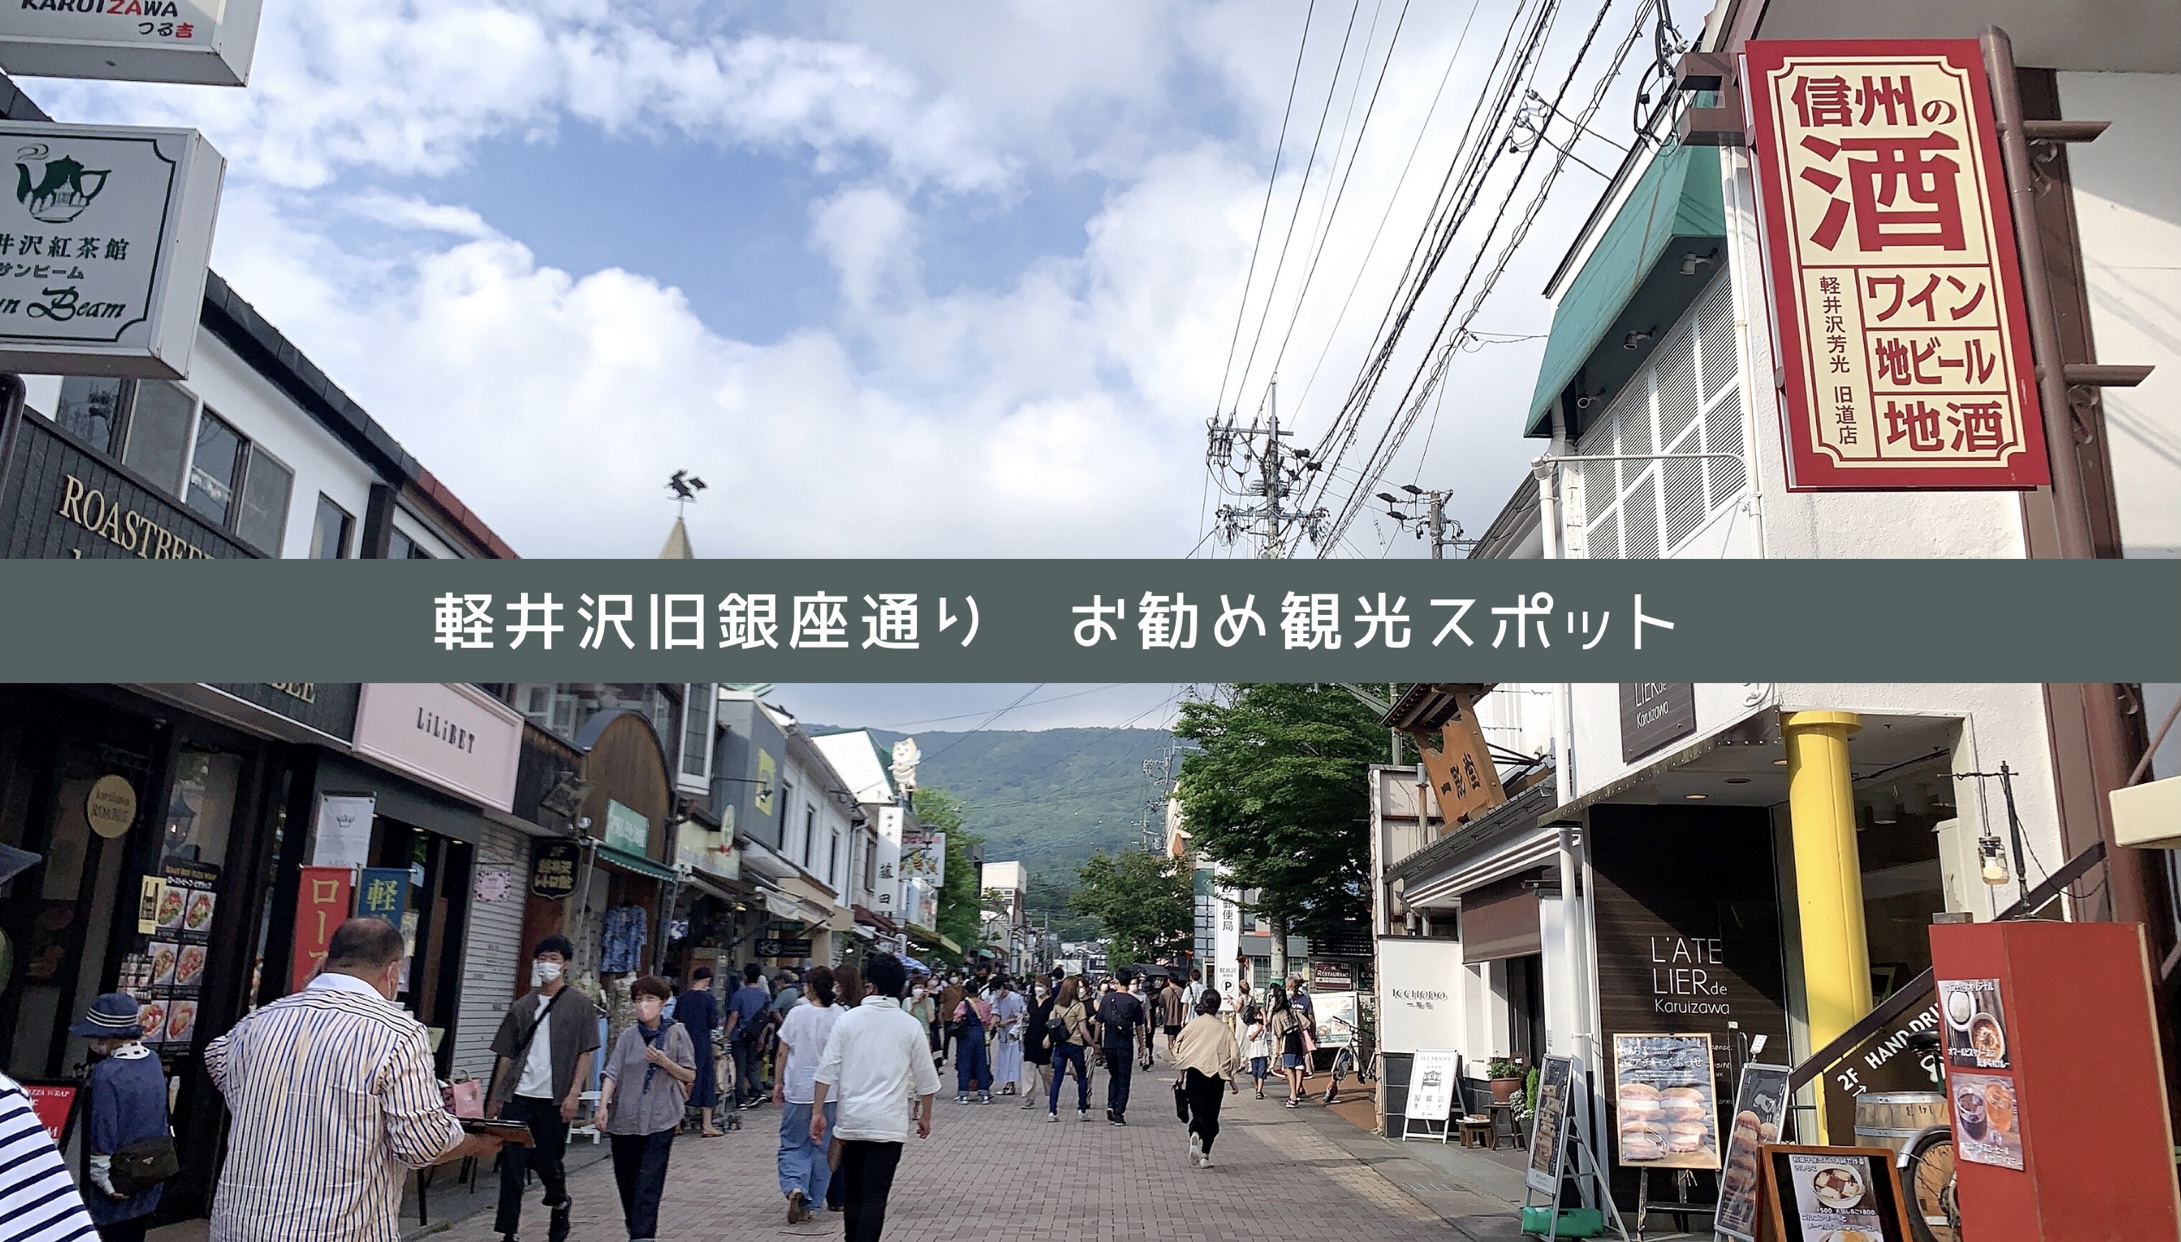 軽井沢旧銀座通りを中心にお勧めの観光スポット 自由気ままに楽しむ